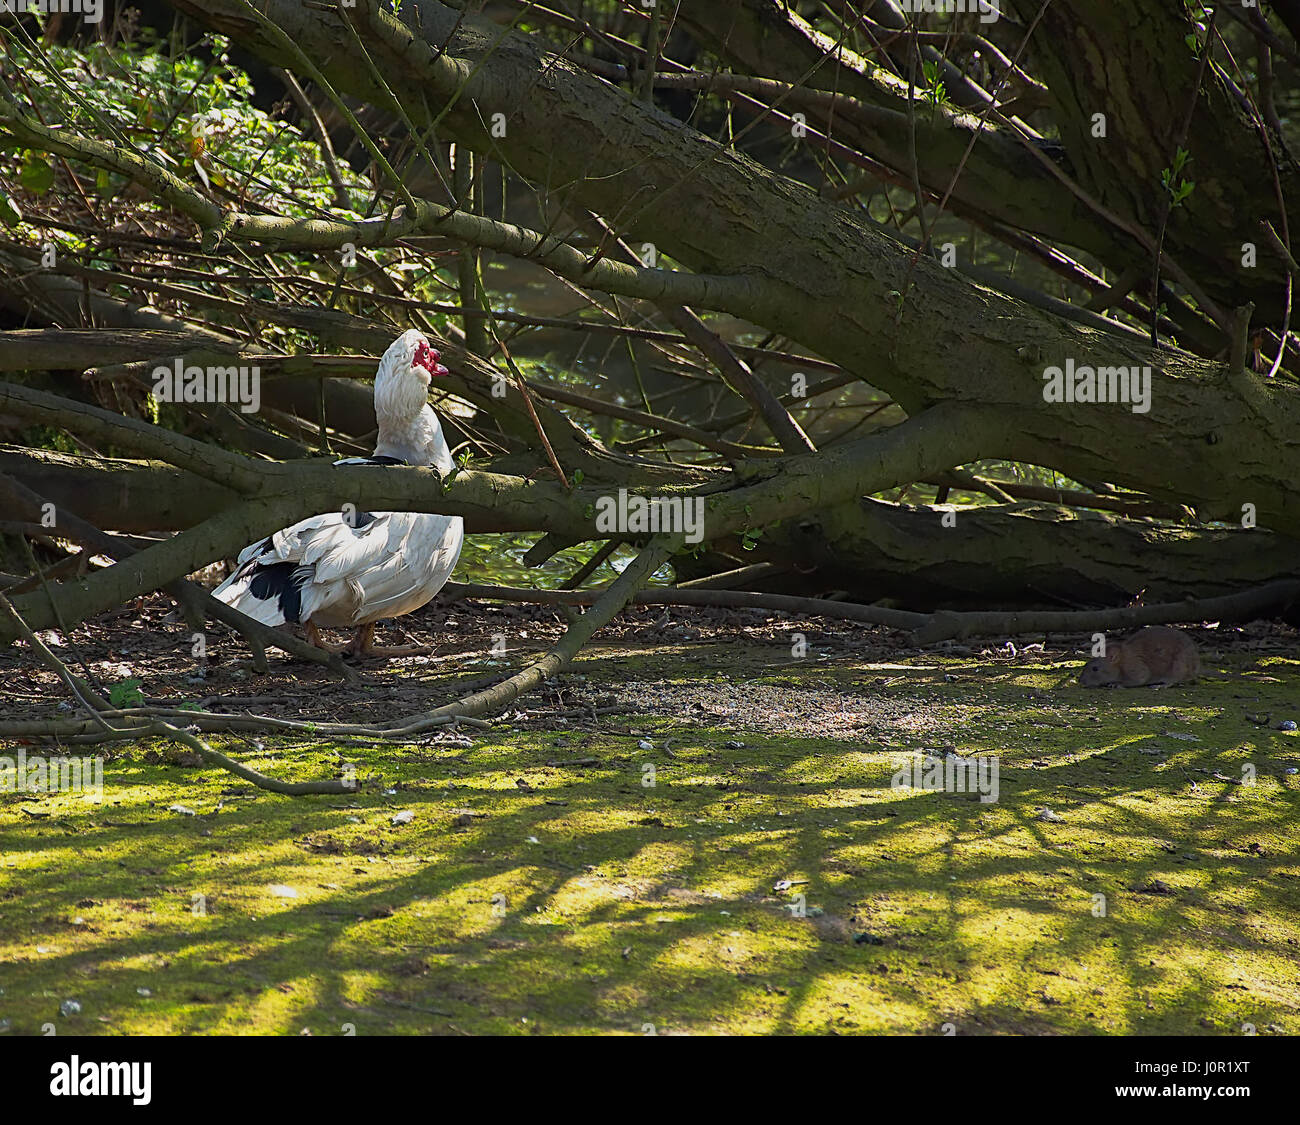 Muscovy duck und Ratte essen die gleiche Nahrung im Wald. das Verhalten der Tiere, Schädlingsbefall problem. Westport See, Stoke-on-Trent, Staffordshire, Großbritannien. Natur Uk. Stockfoto